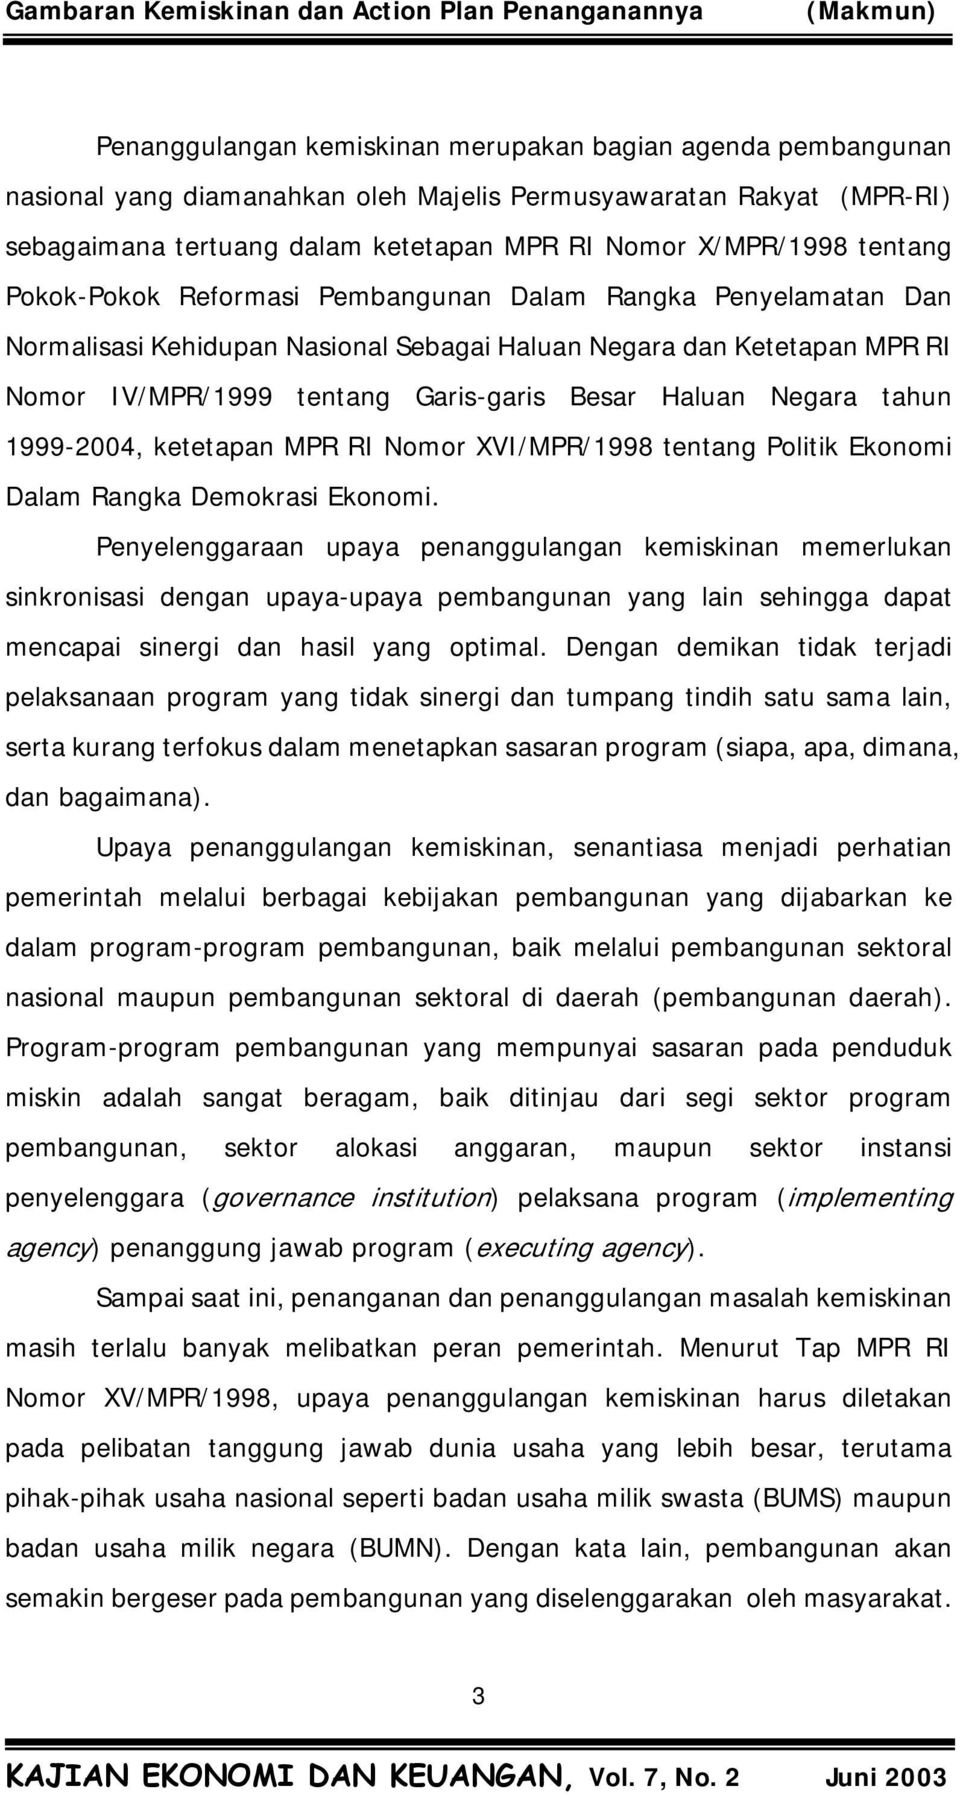 Negara tahun 1999-2004, ketetapan MPR RI Nomor XVI/MPR/1998 tentang Politik Ekonomi Dalam Rangka Demokrasi Ekonomi.